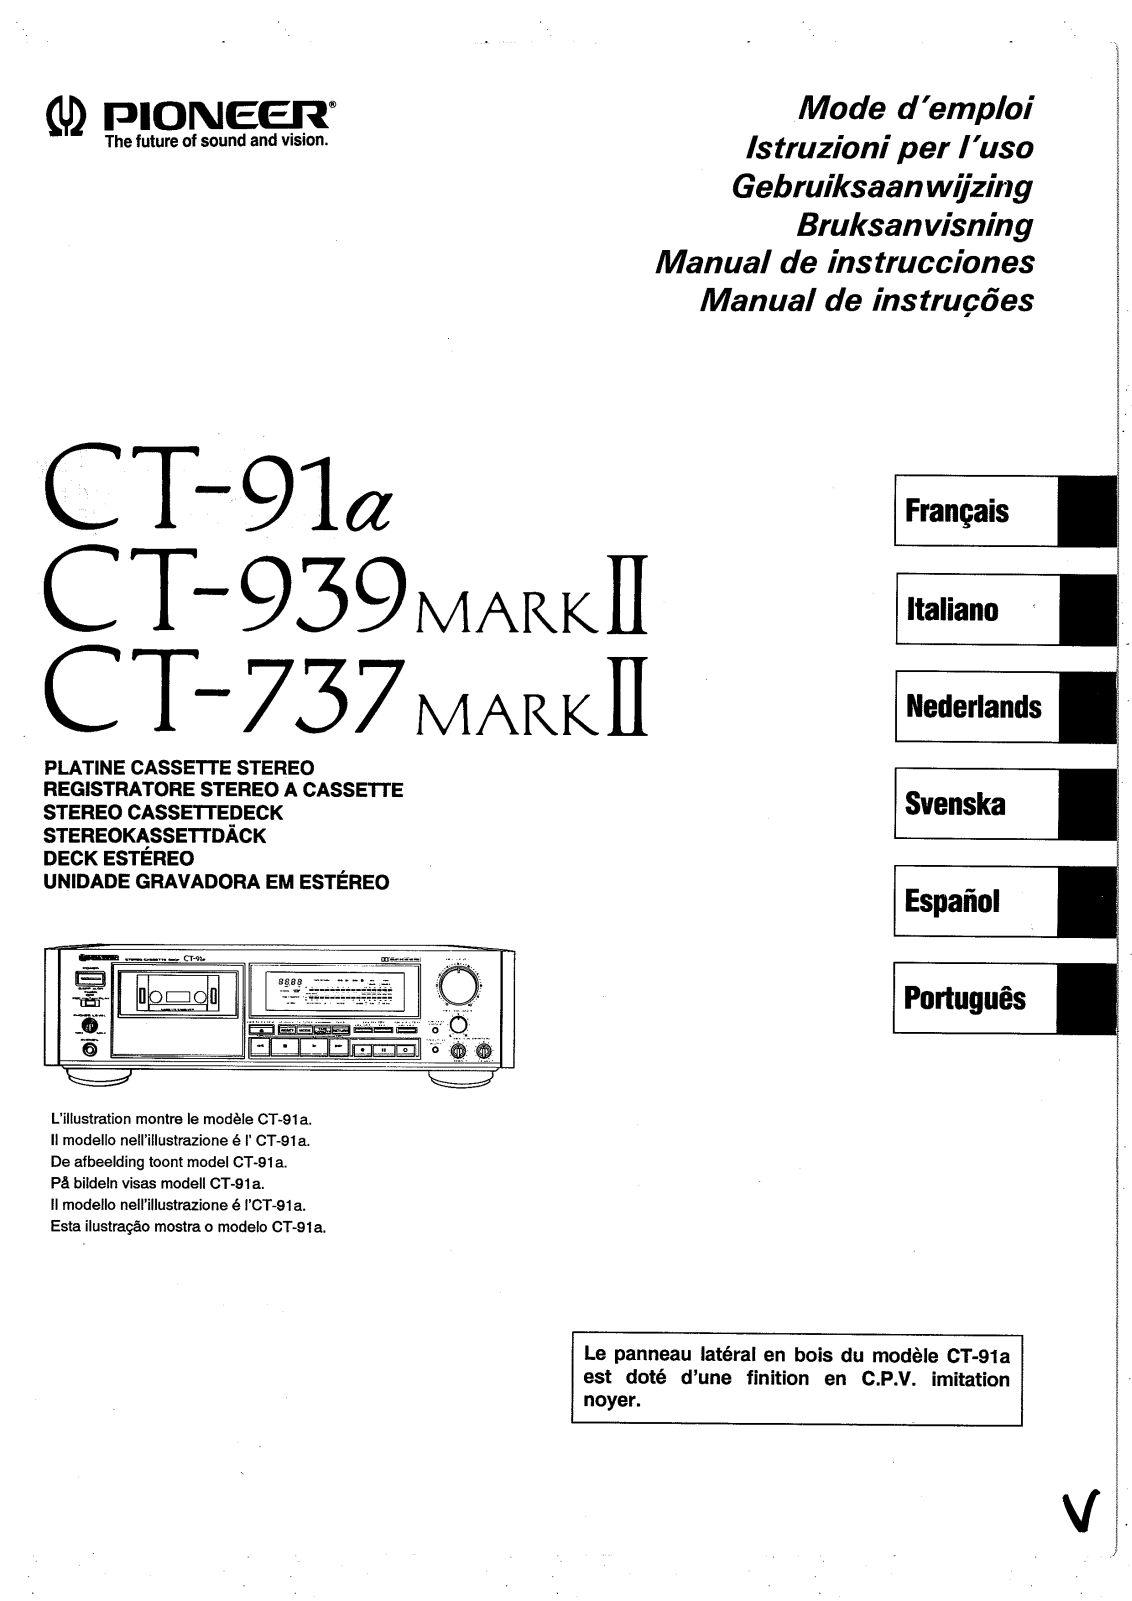 Pioneer CT-939 MARK II, CT-737 MARK II Manual